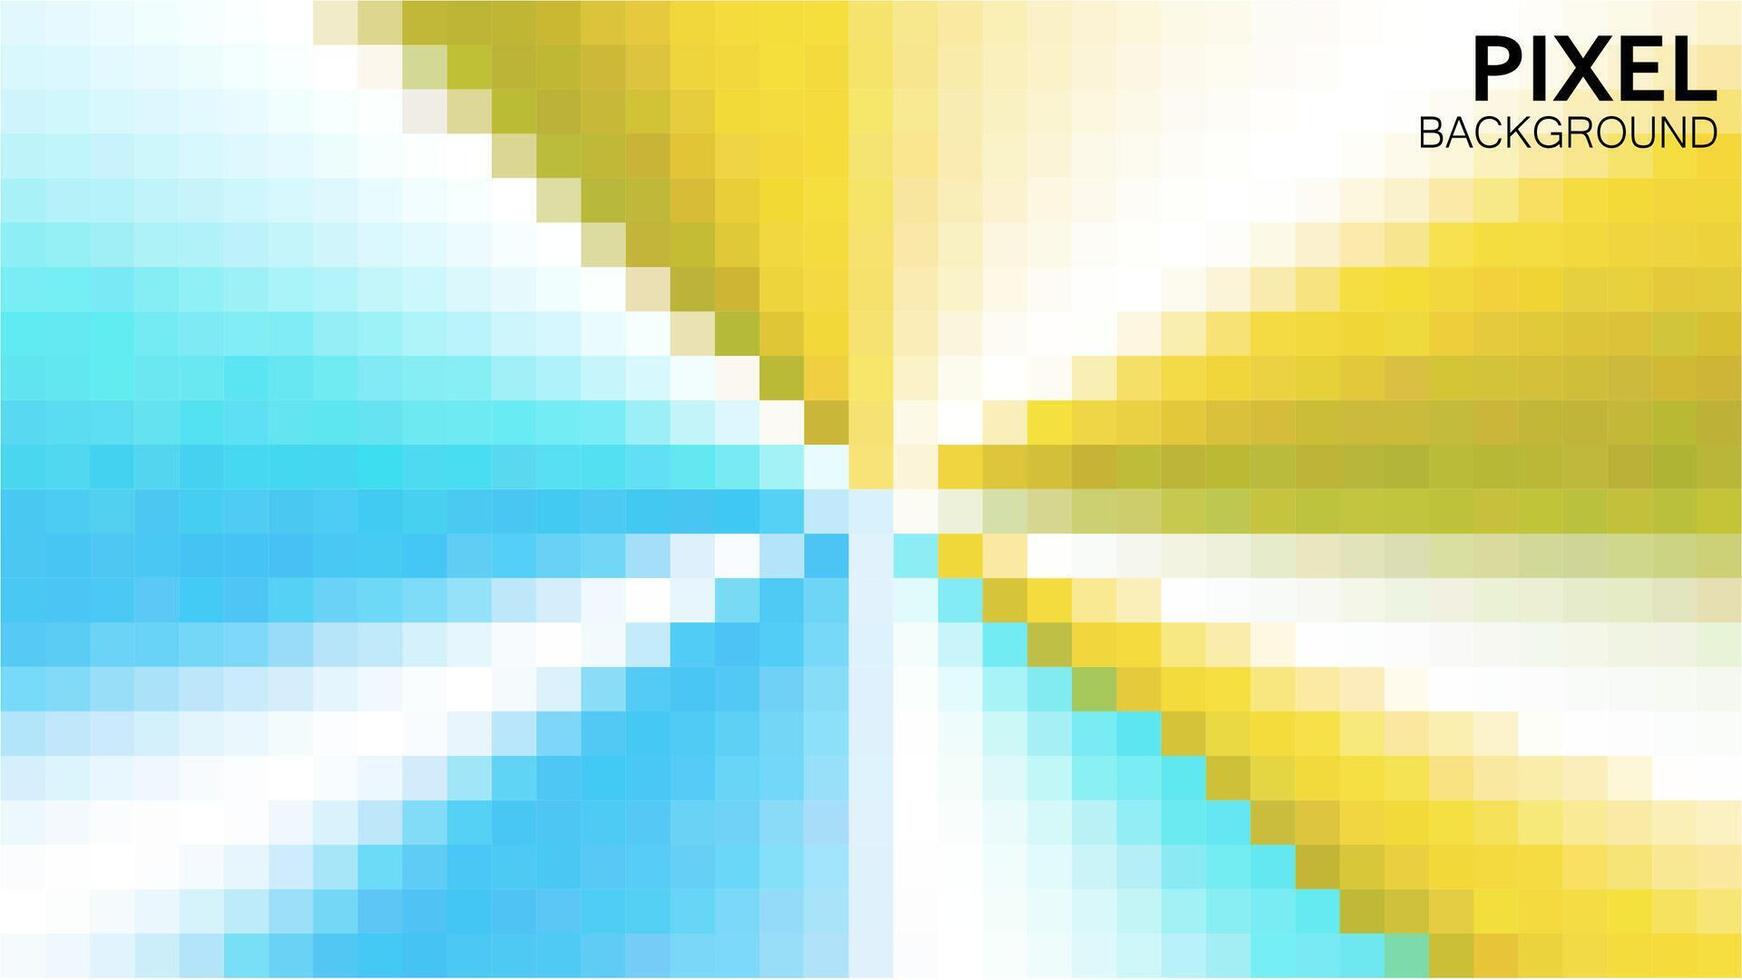 meetkundig lijn helling kleurrijk achtergrond ontwerp pixel stijl. vector illustratie. gloed en futuristische effect.